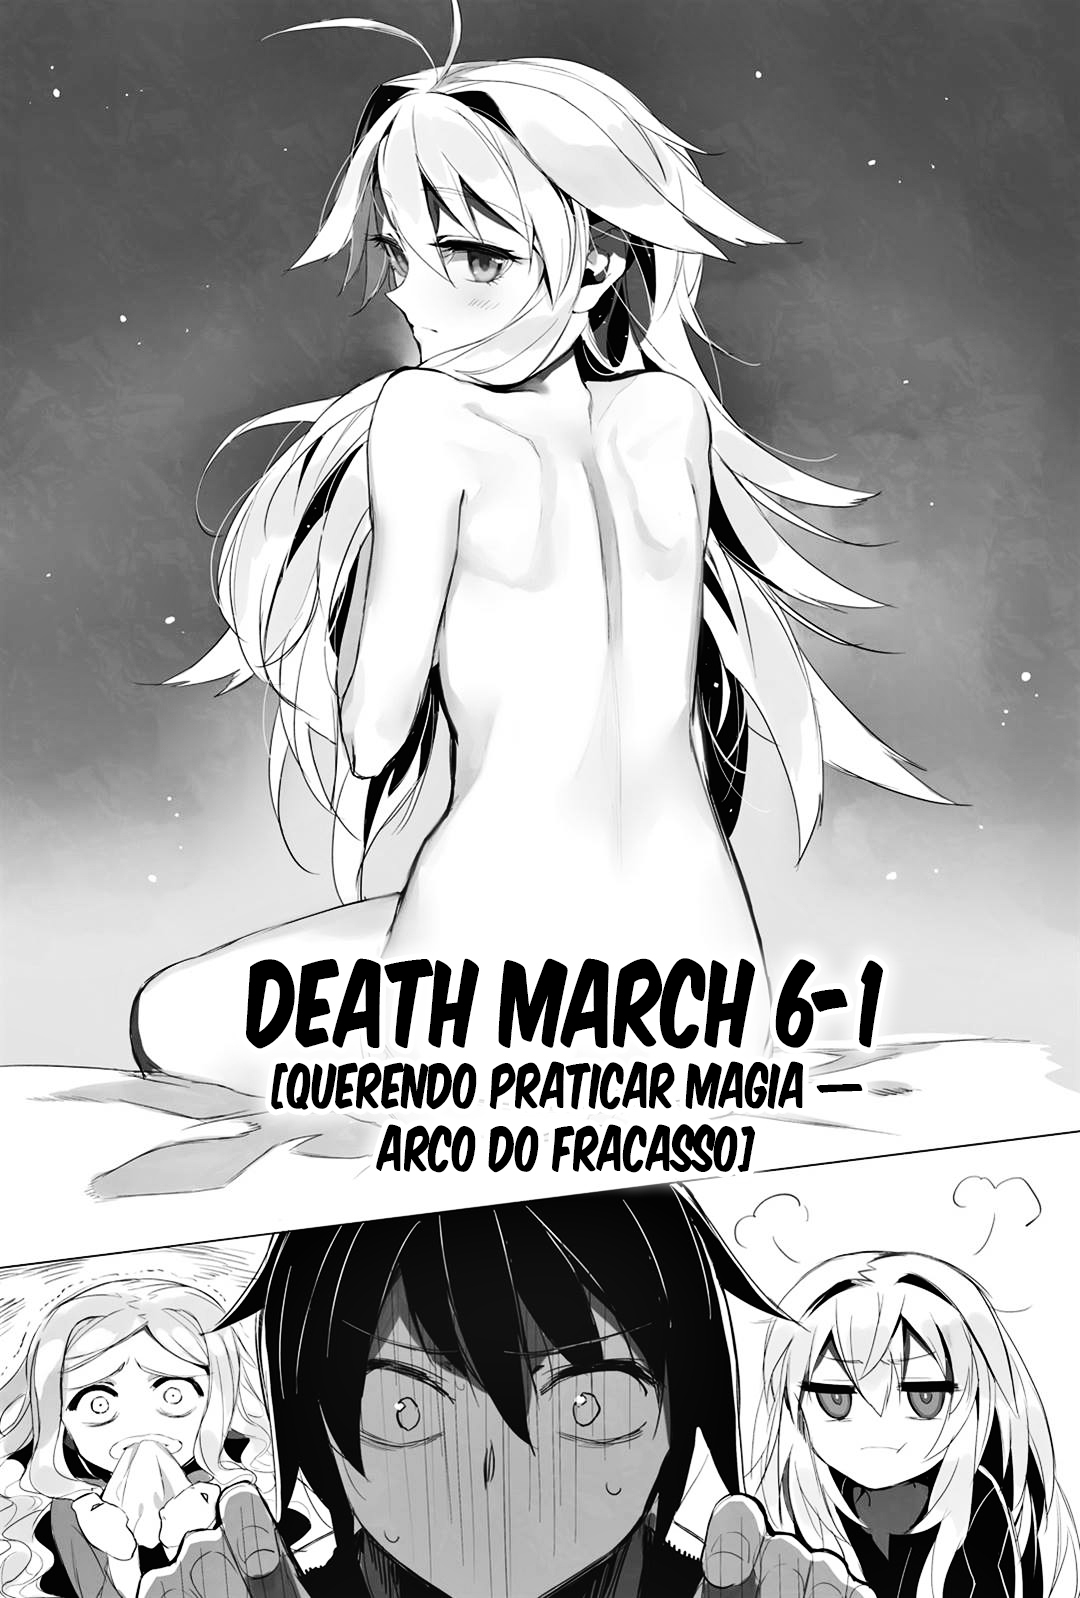 WN] Death March Kara Hajimaru Isekai Kyousoukyoku - Revisado Capítulo 3-06